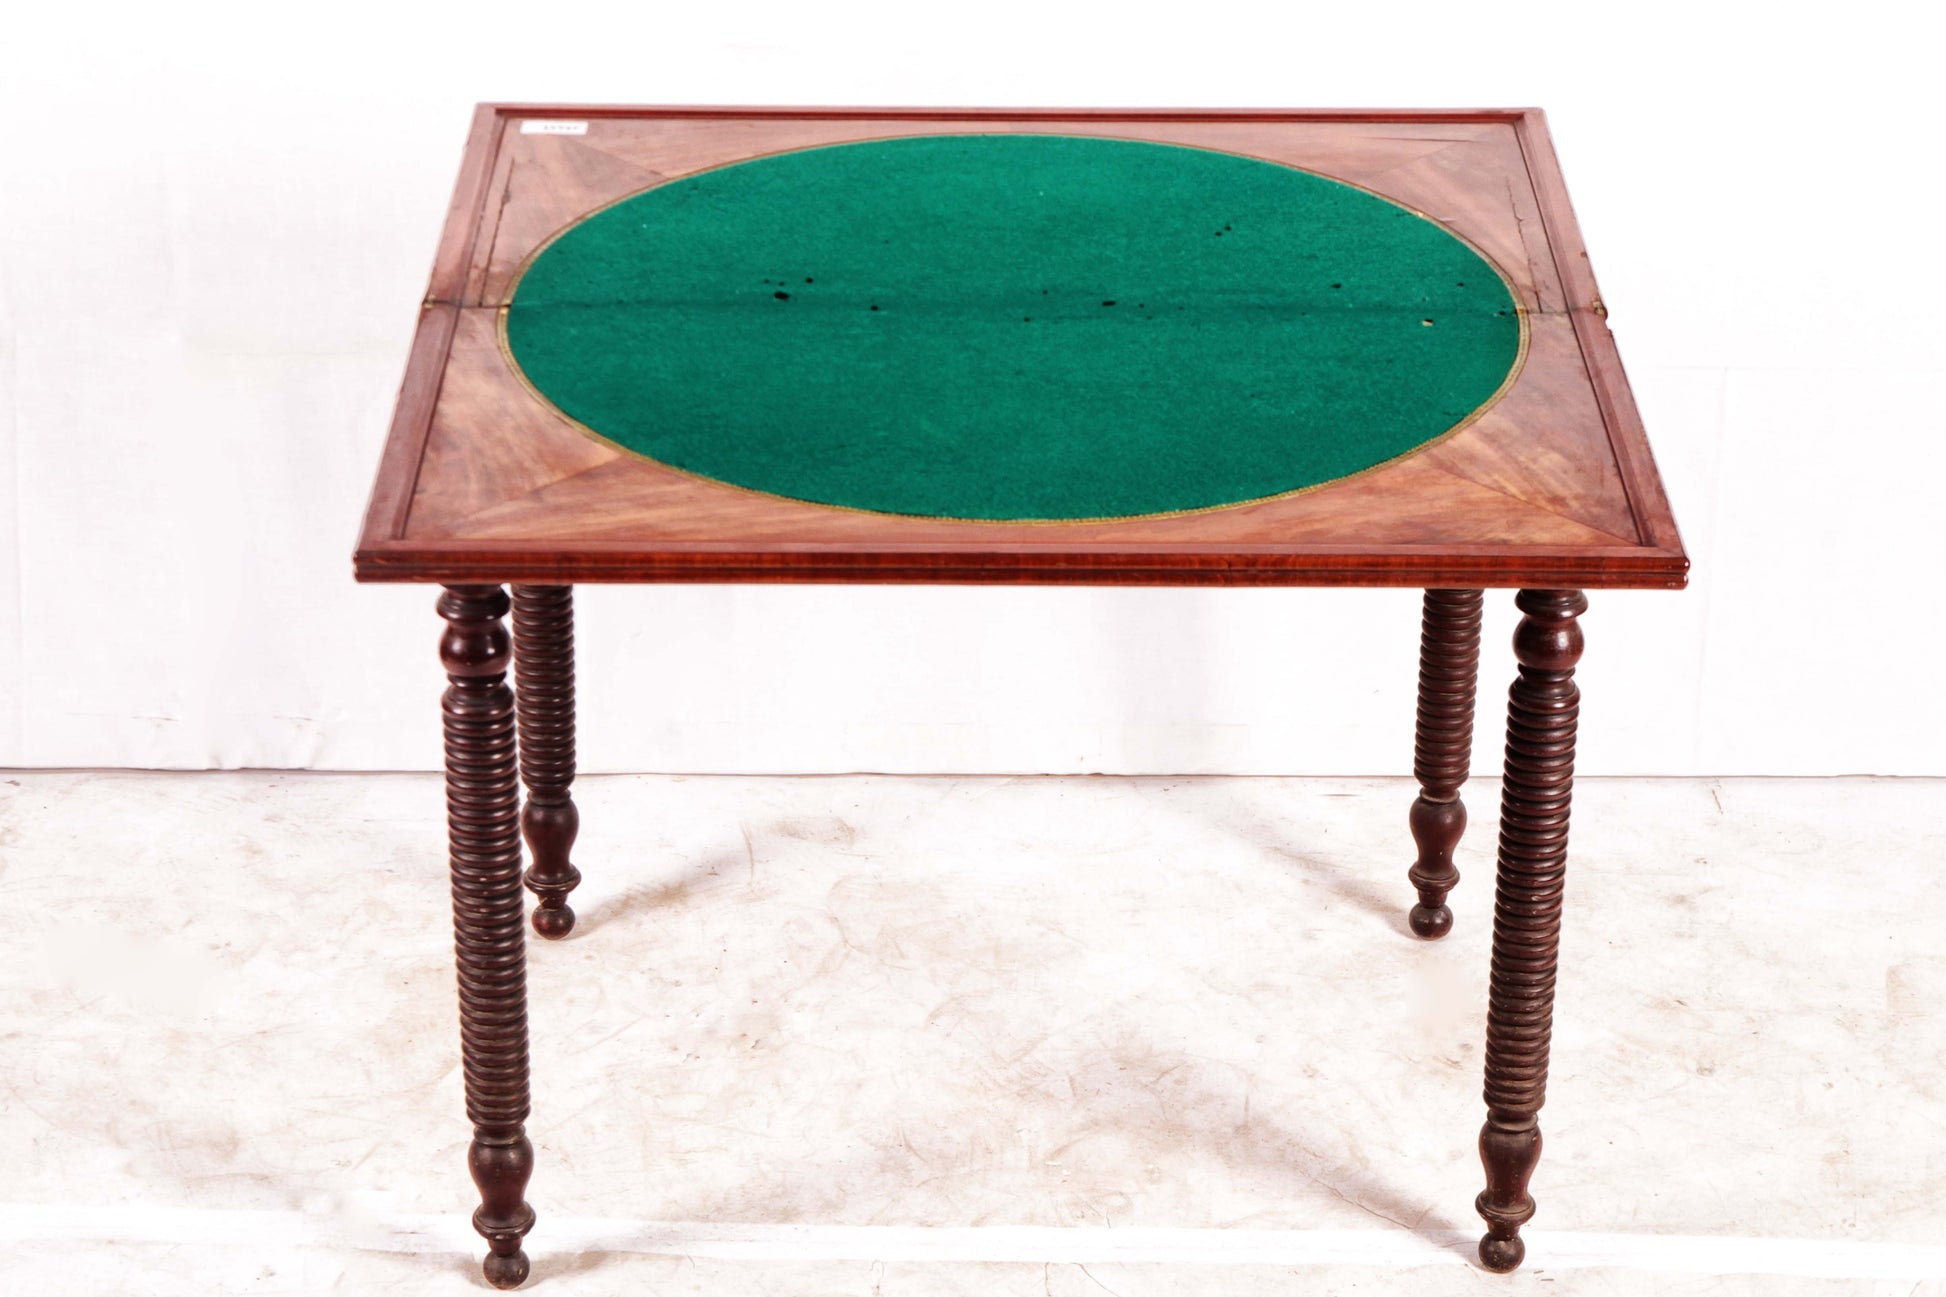 Antico tavolino da gioco consolle inglese del 1800 stile Carlo X mogano